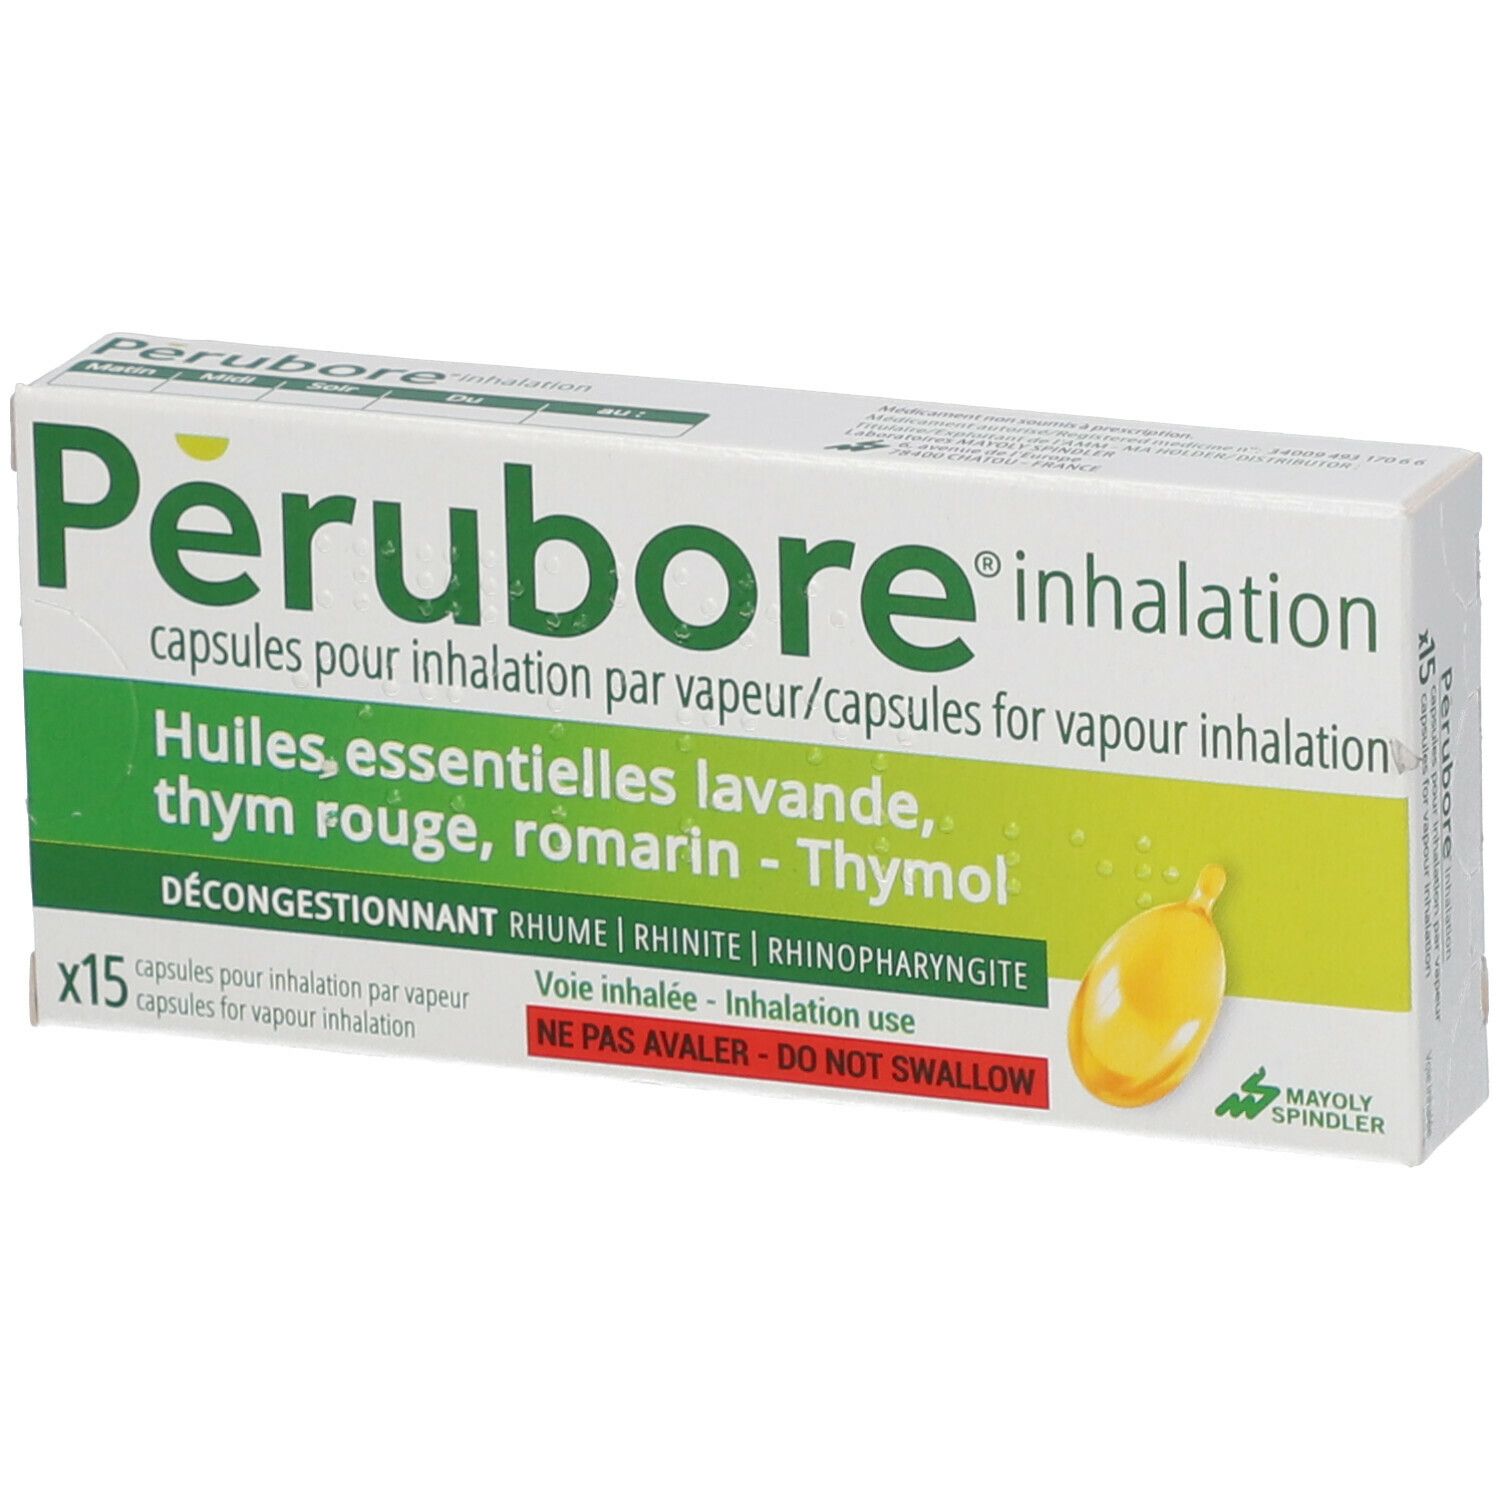 Perubore® inhalation